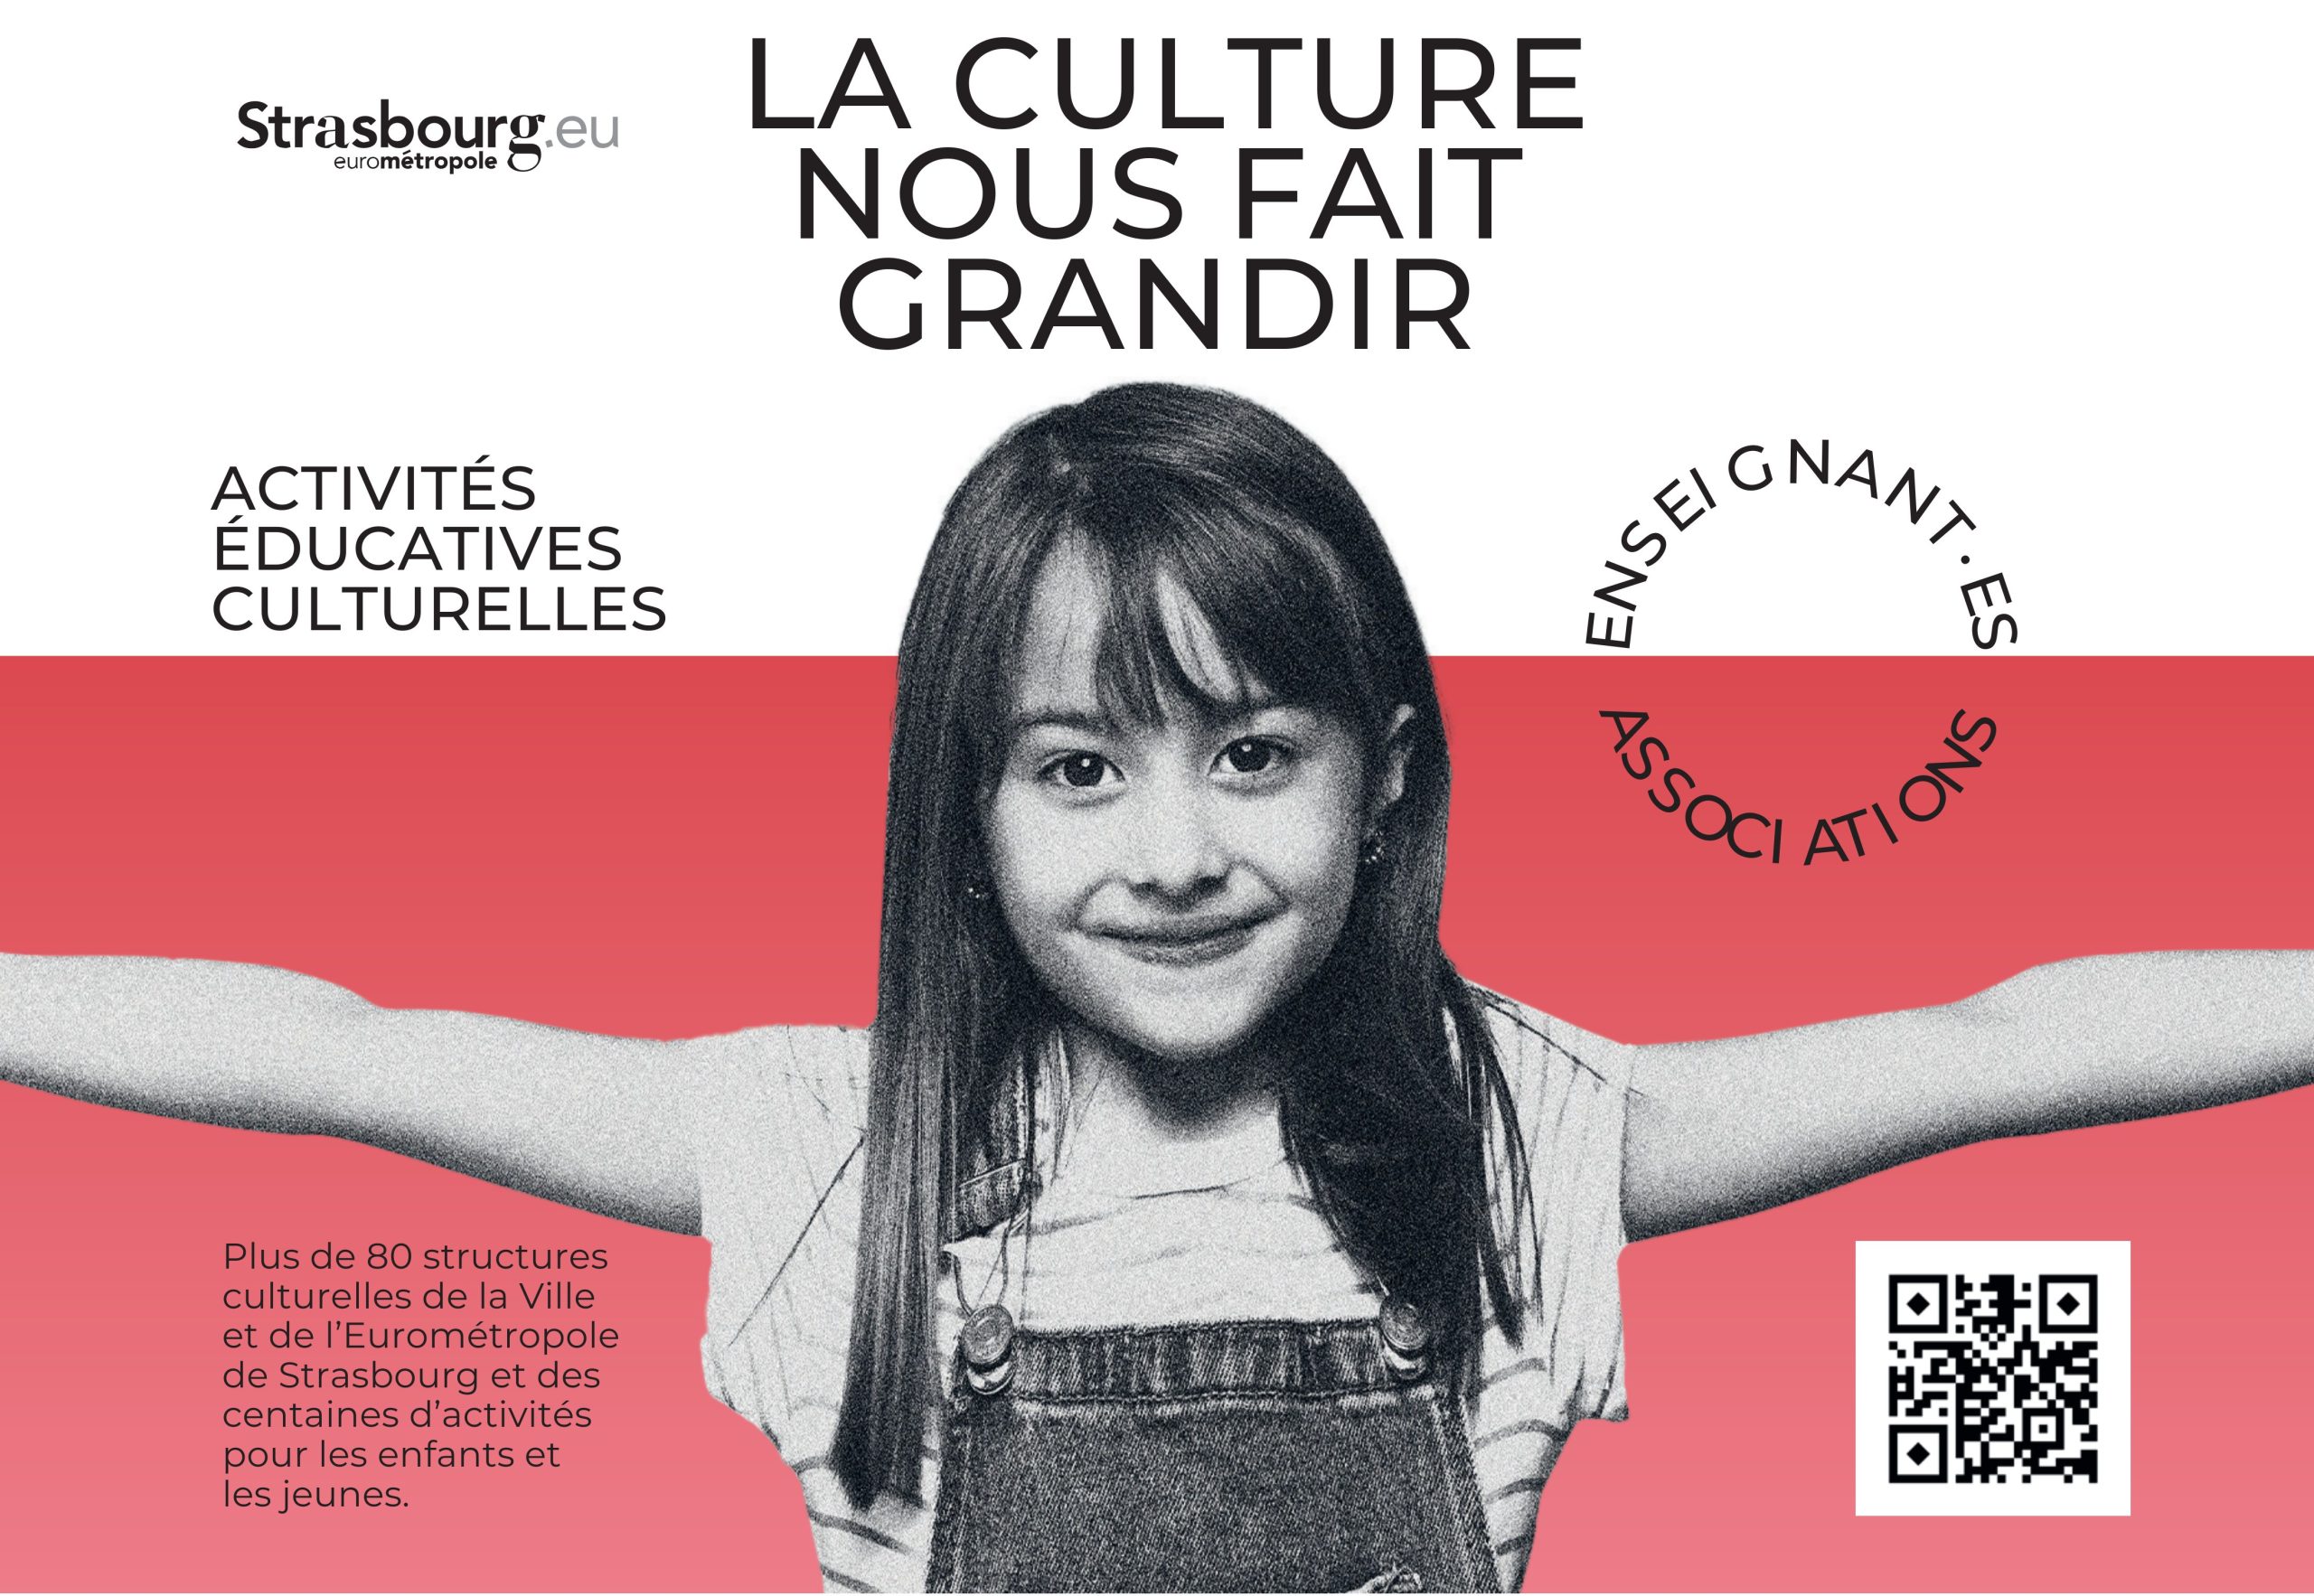 Découvrez le nouveau guide des activités éducatives et culturelles de l’Eurométropole de Strasbourg